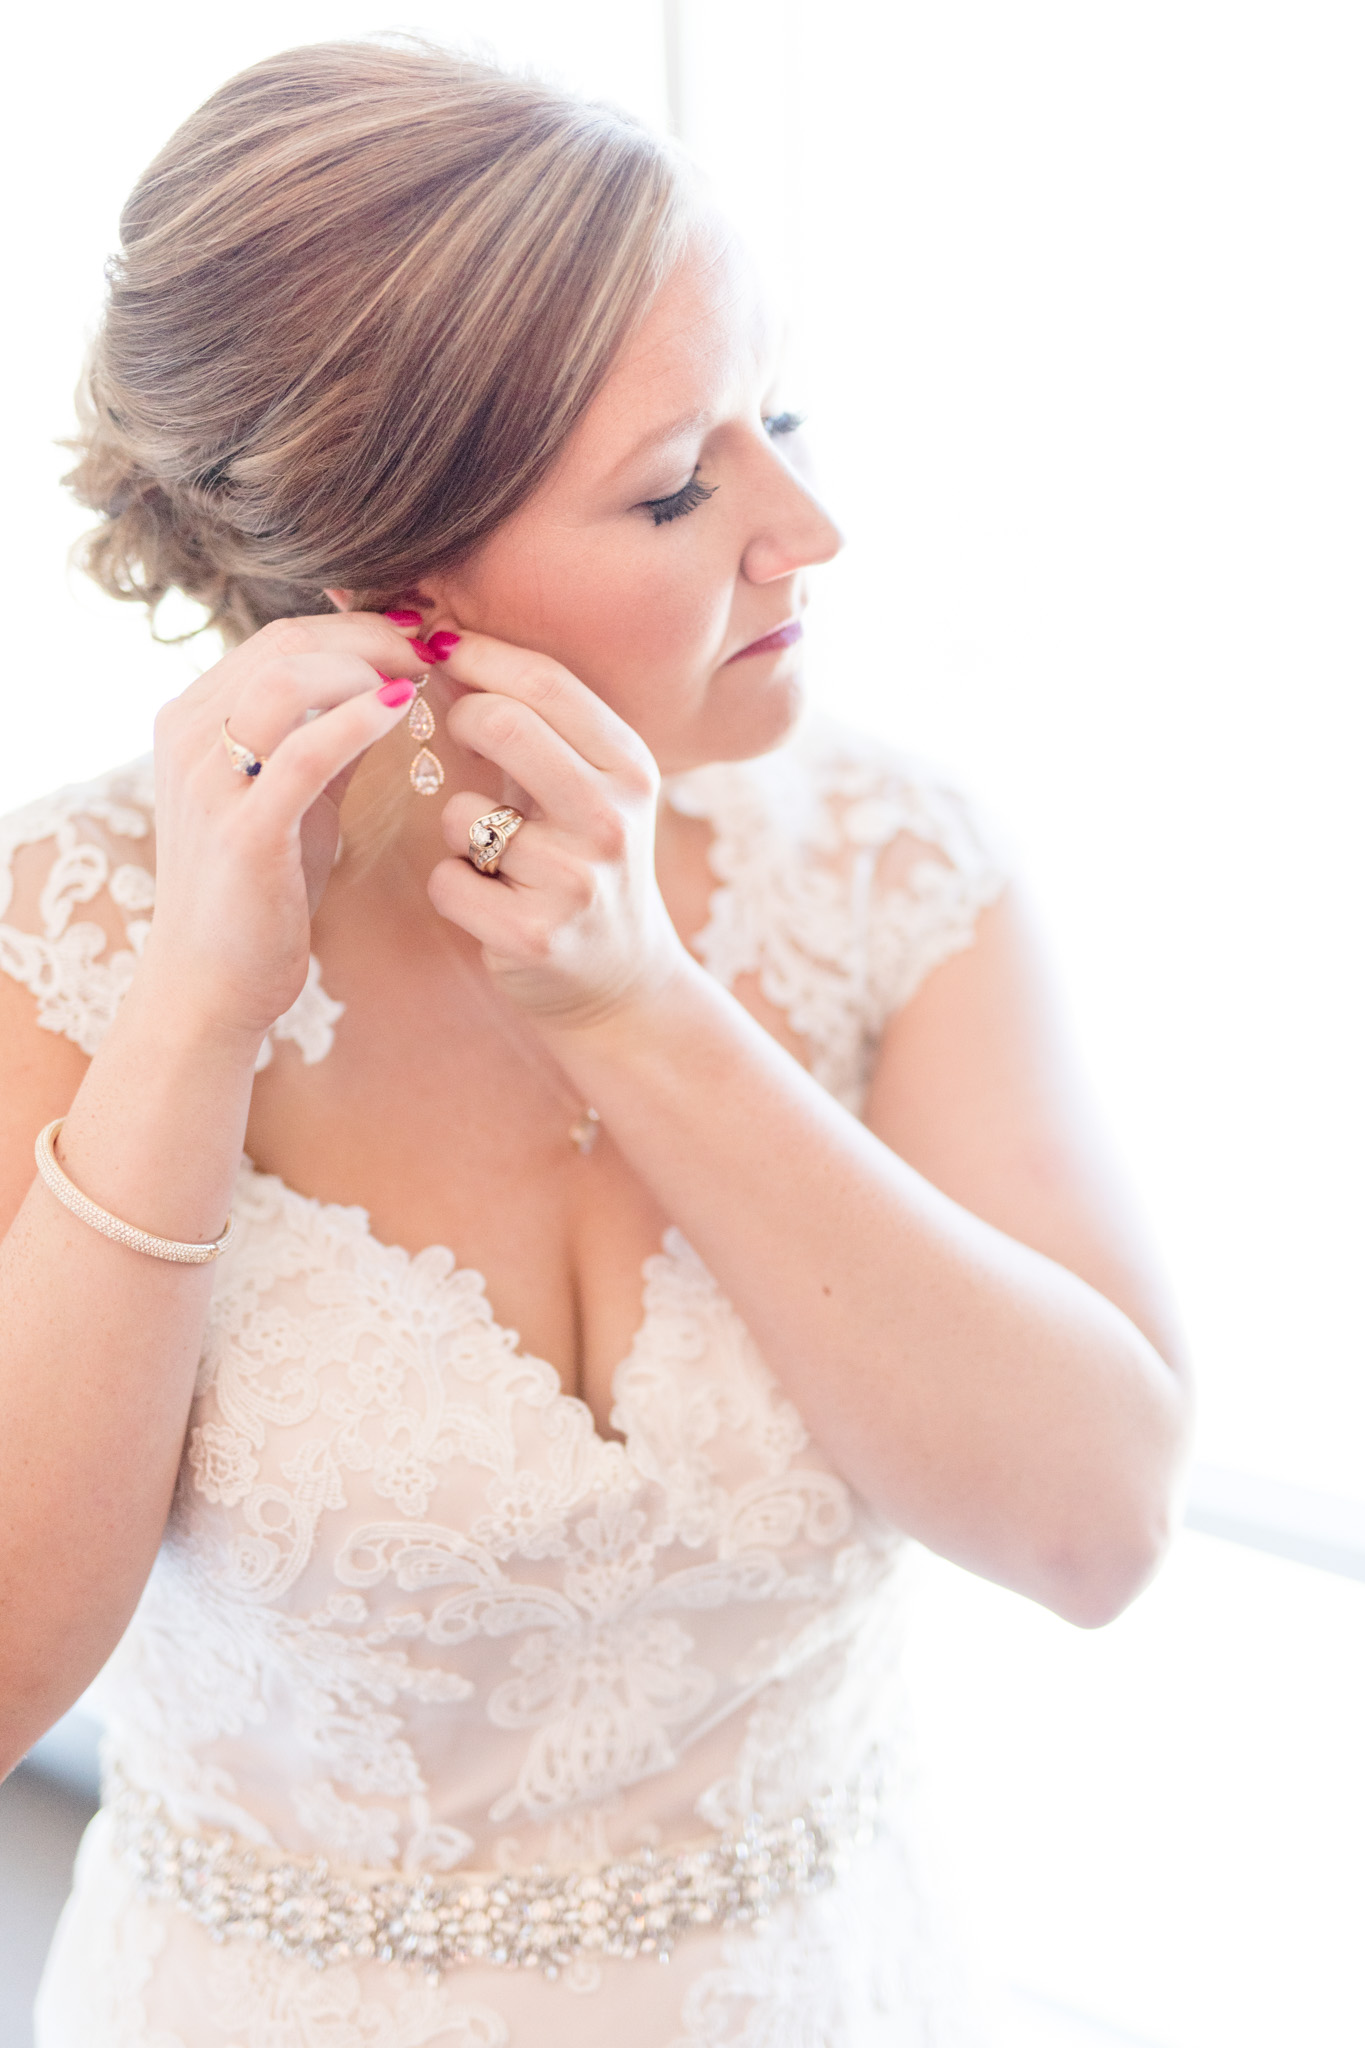 Bride puts on earrings.